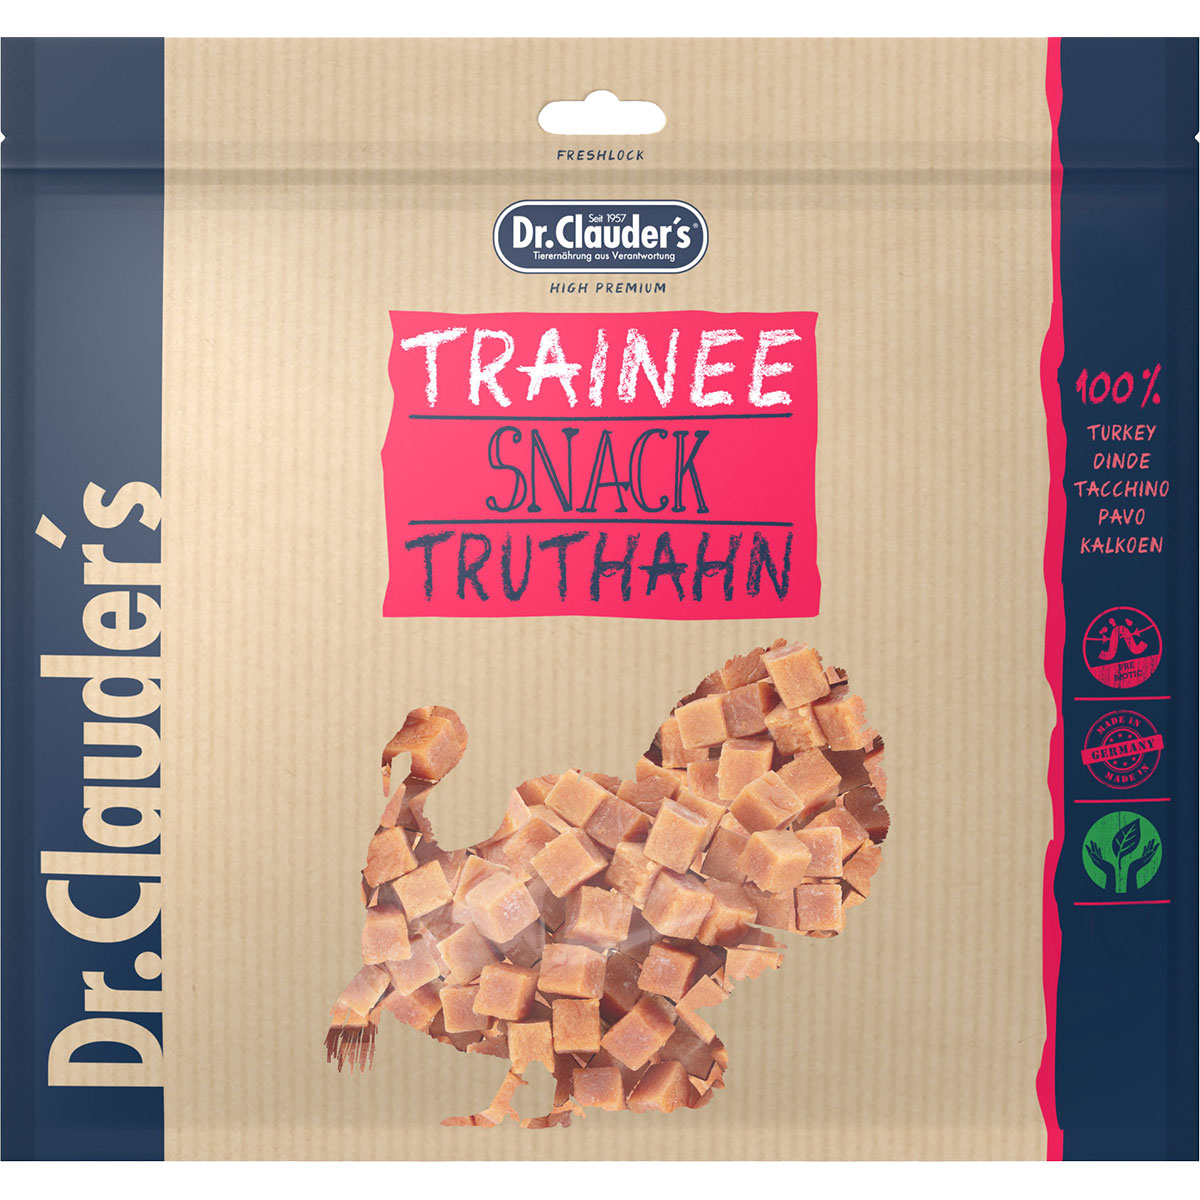 Dr. Clauders Trainee Snack Truthahnfleisch, 500g